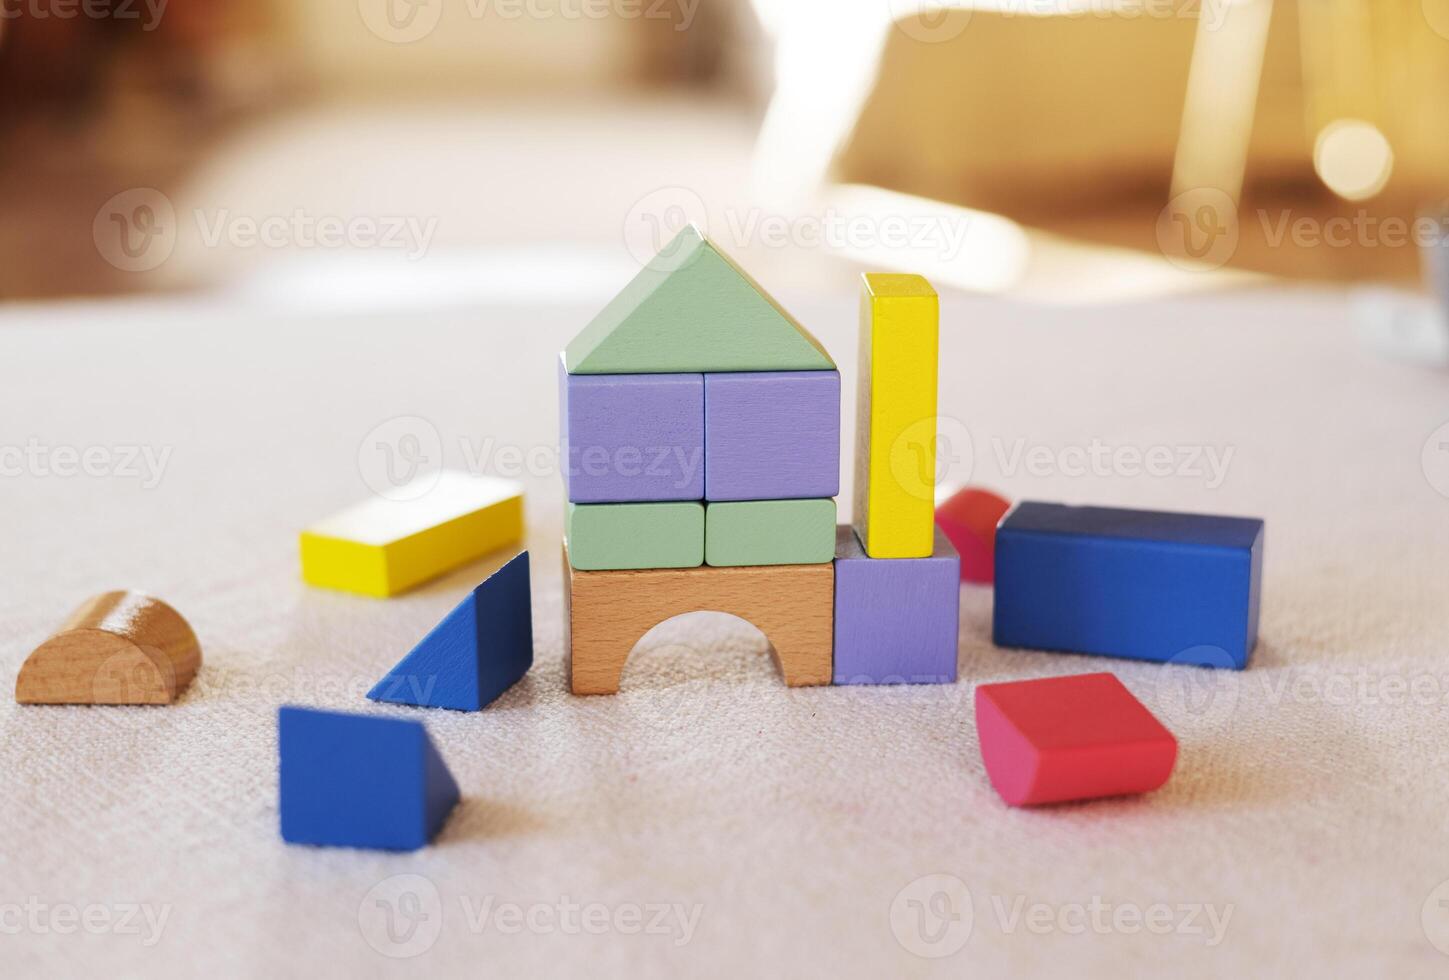 färgrik trä- block på Hem tabell. kreativitet leksaker. barn byggnad block. geometrisk former - cirkel, triangel, fyrkant, rektangel. de begrepp av logisk tänkande. foto